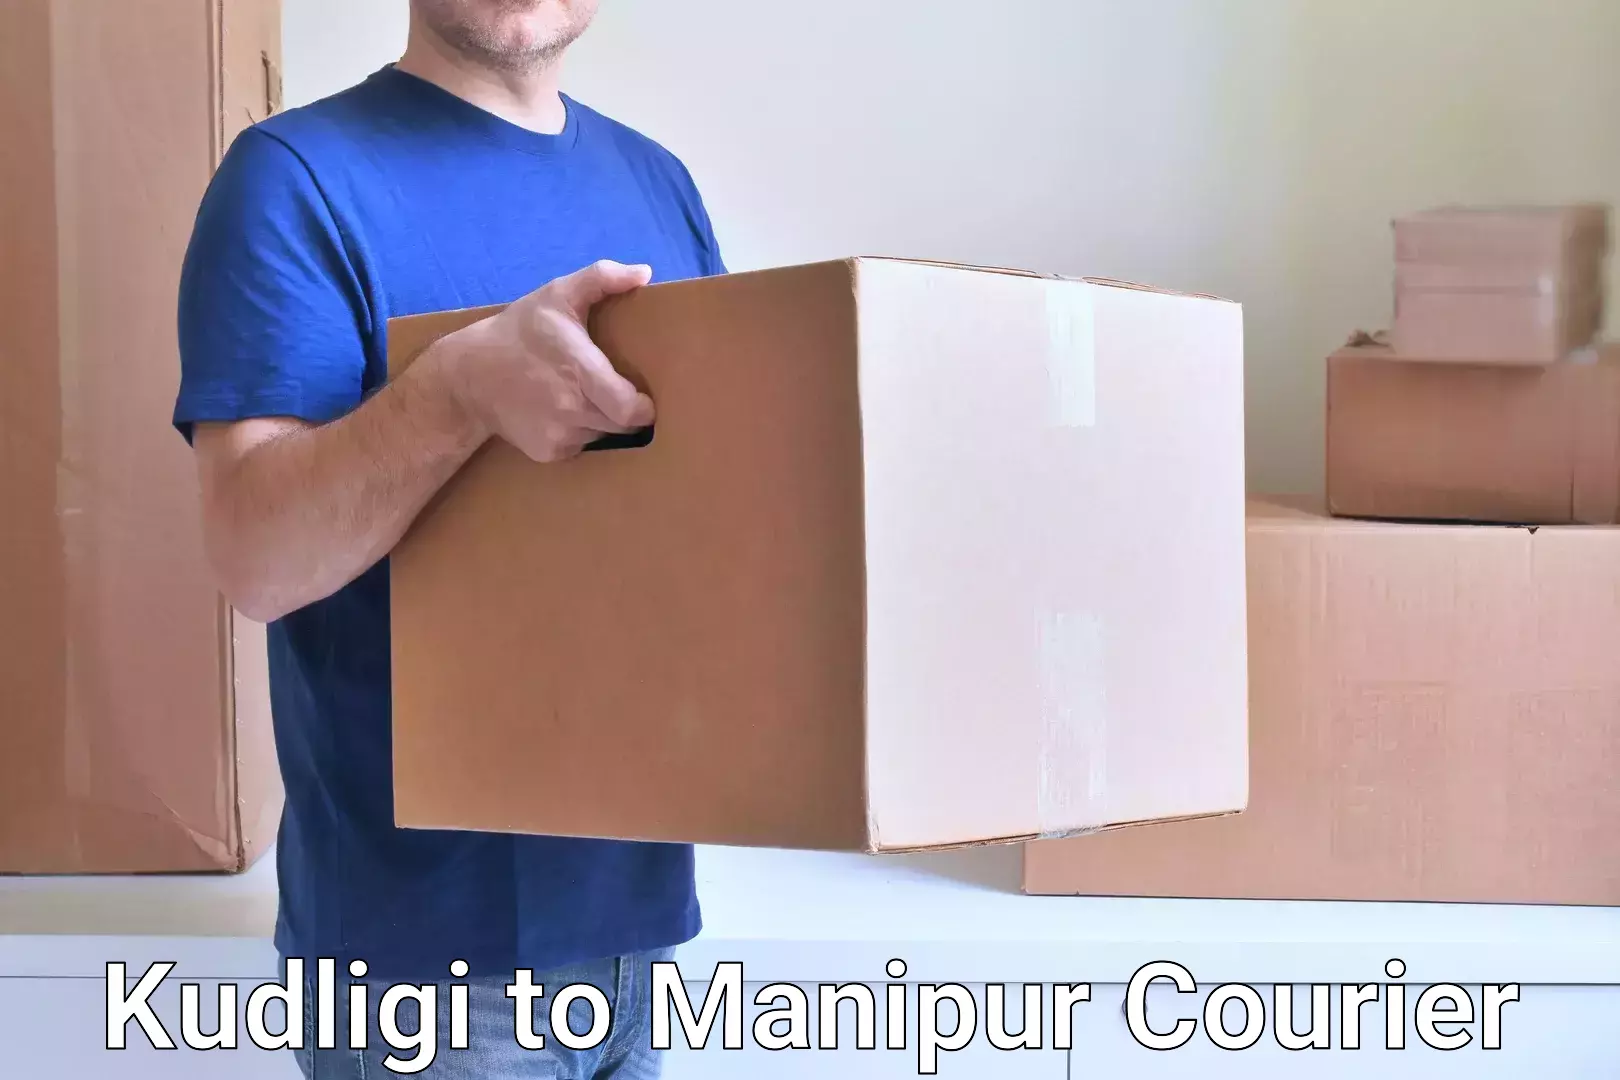 Optimized shipping routes Kudligi to Manipur